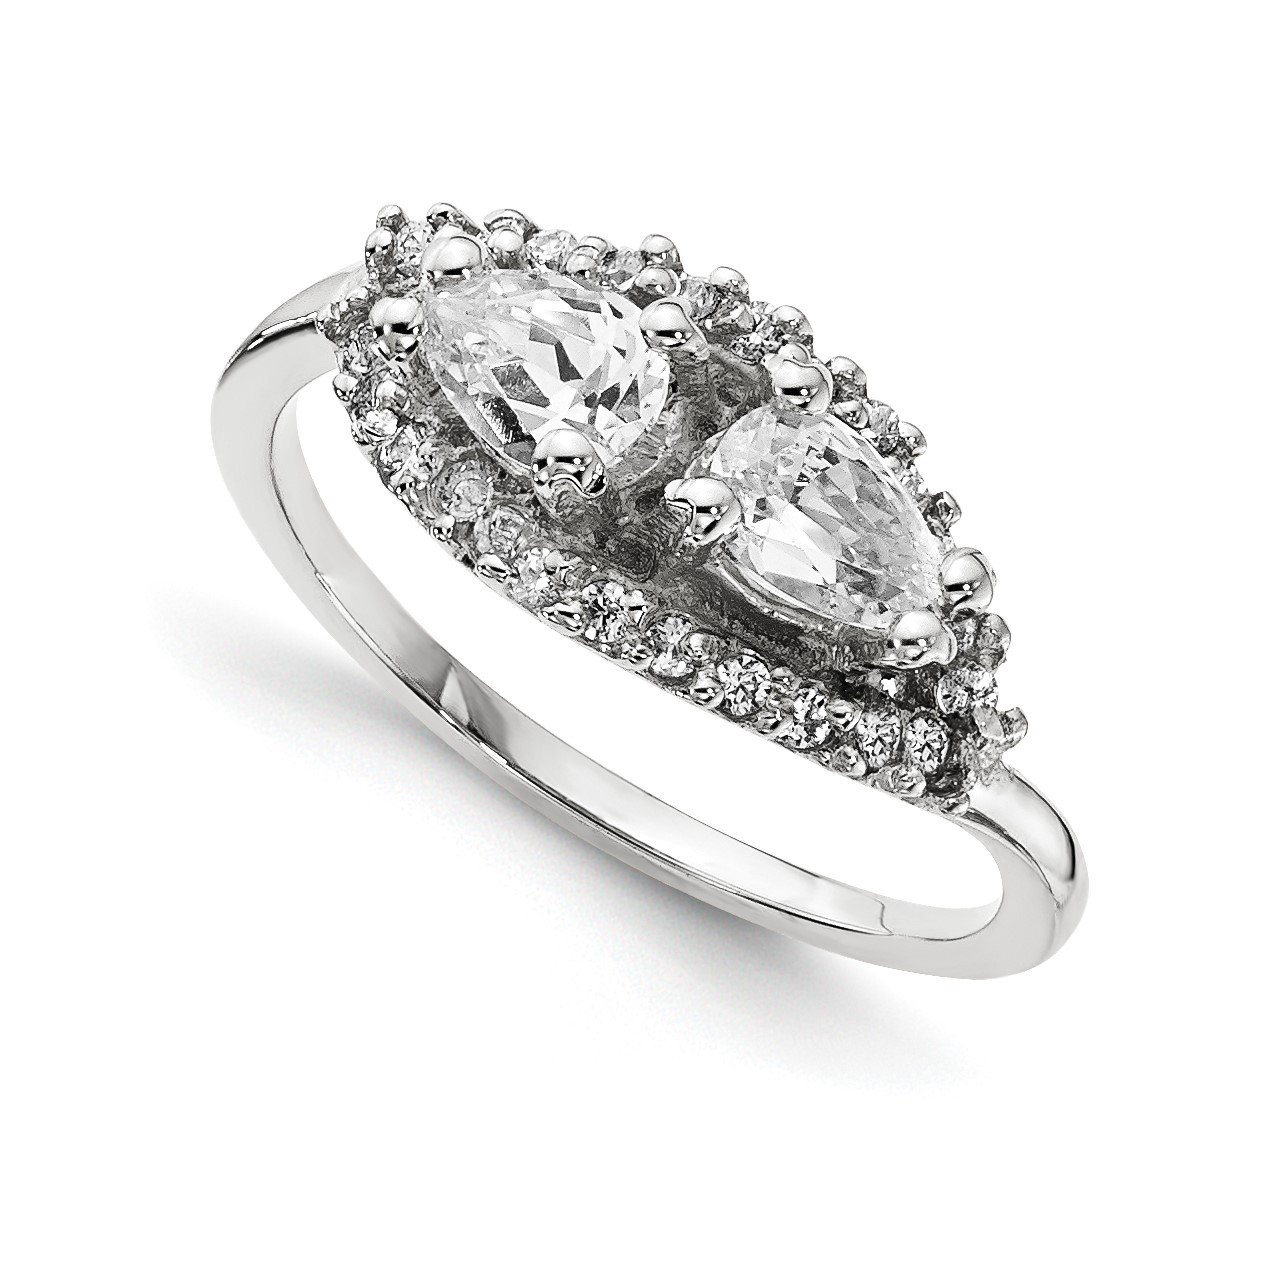 14KW AAA Diamond 2-stone Ring Semi-Mount - 6x4 mm center stones